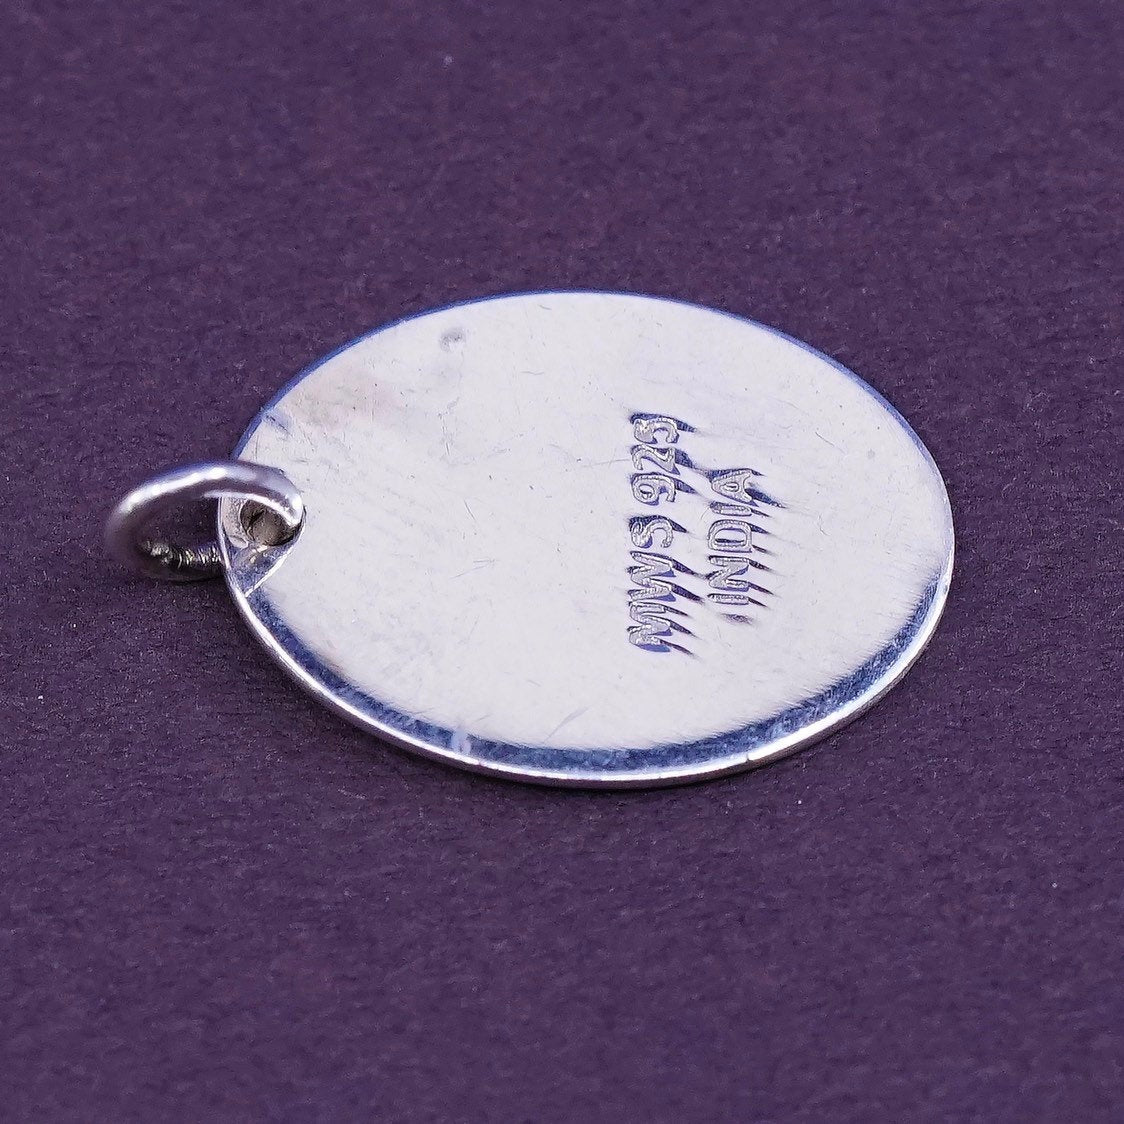 vtg MWS Sterling silver handmade initial "L" pendant, 925 tag charm